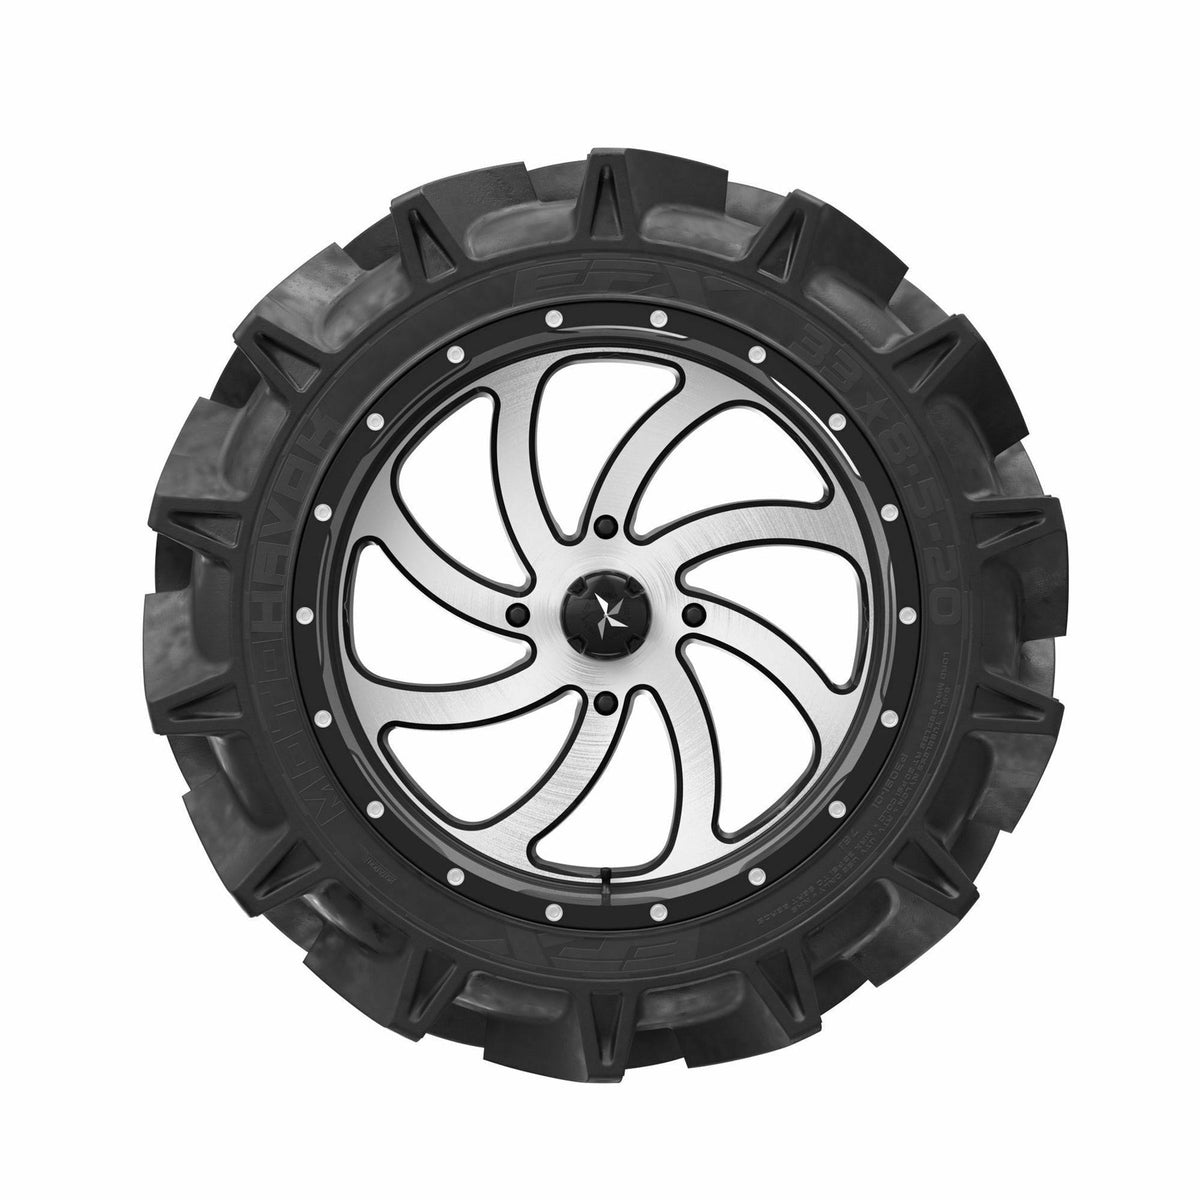 MotoHavok-Tires-EFX-28x8.5-14-Black Market UTV